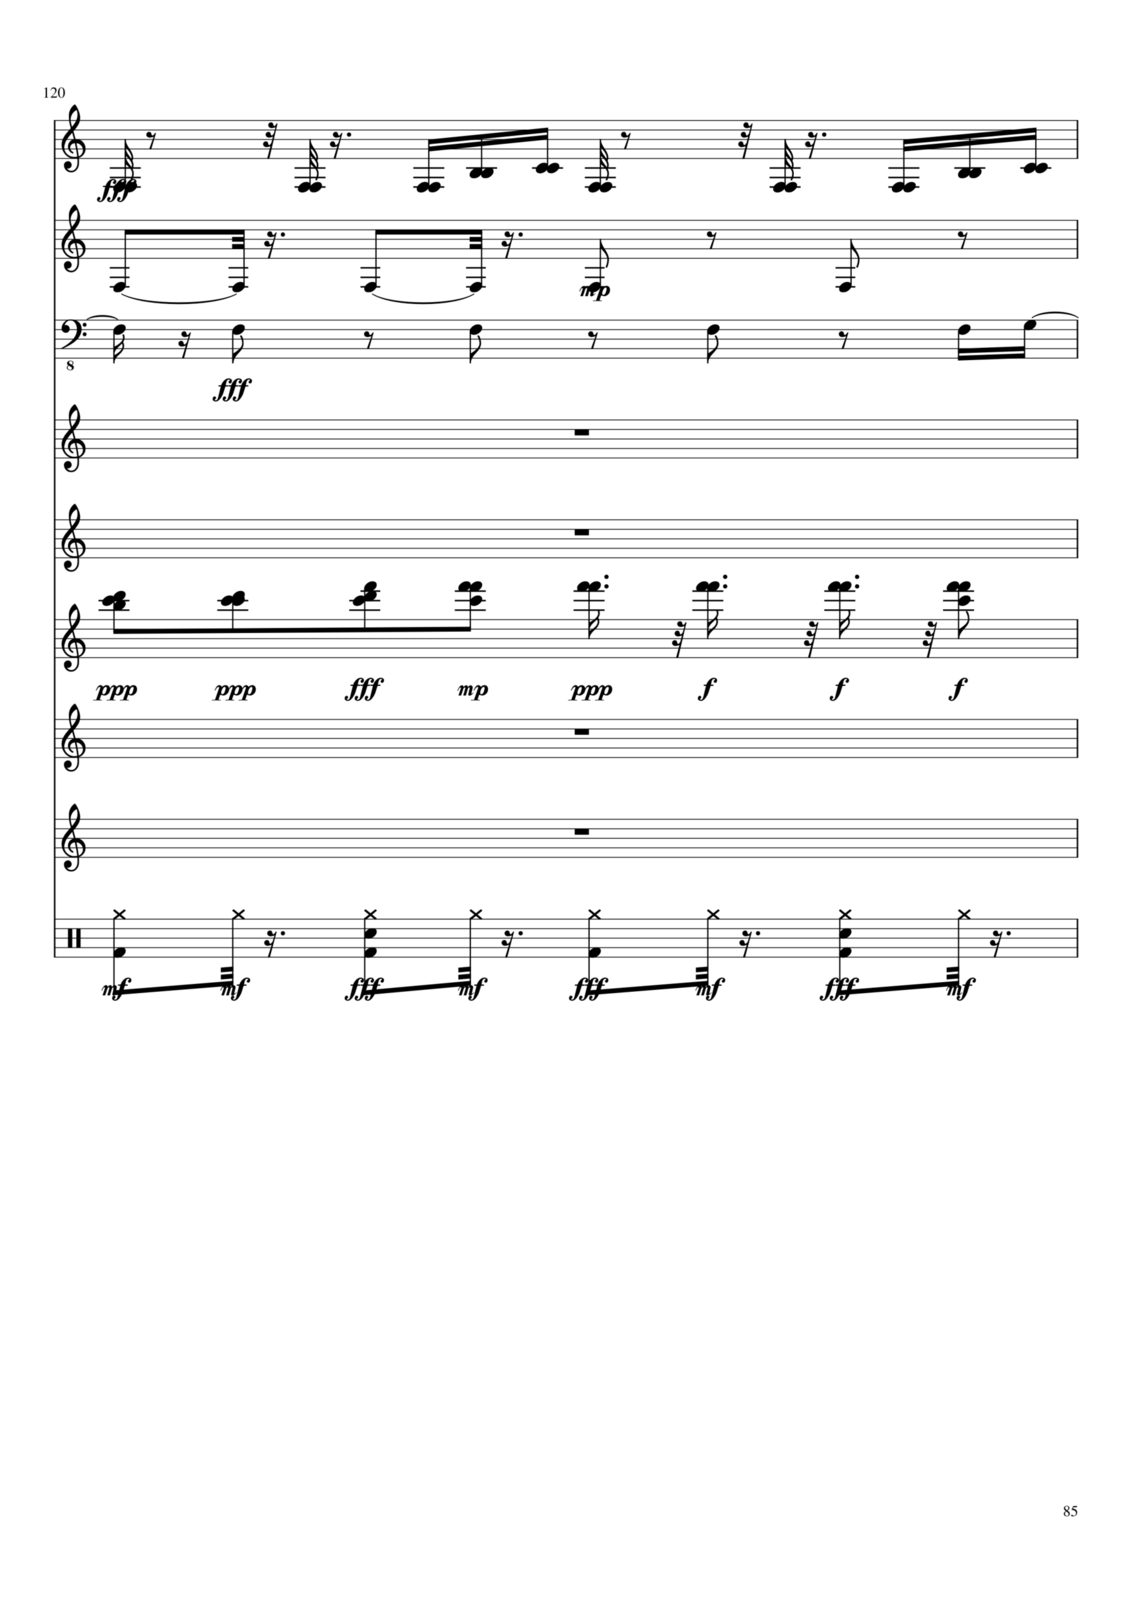 Zvezdnyiy dojd slide, Image 1